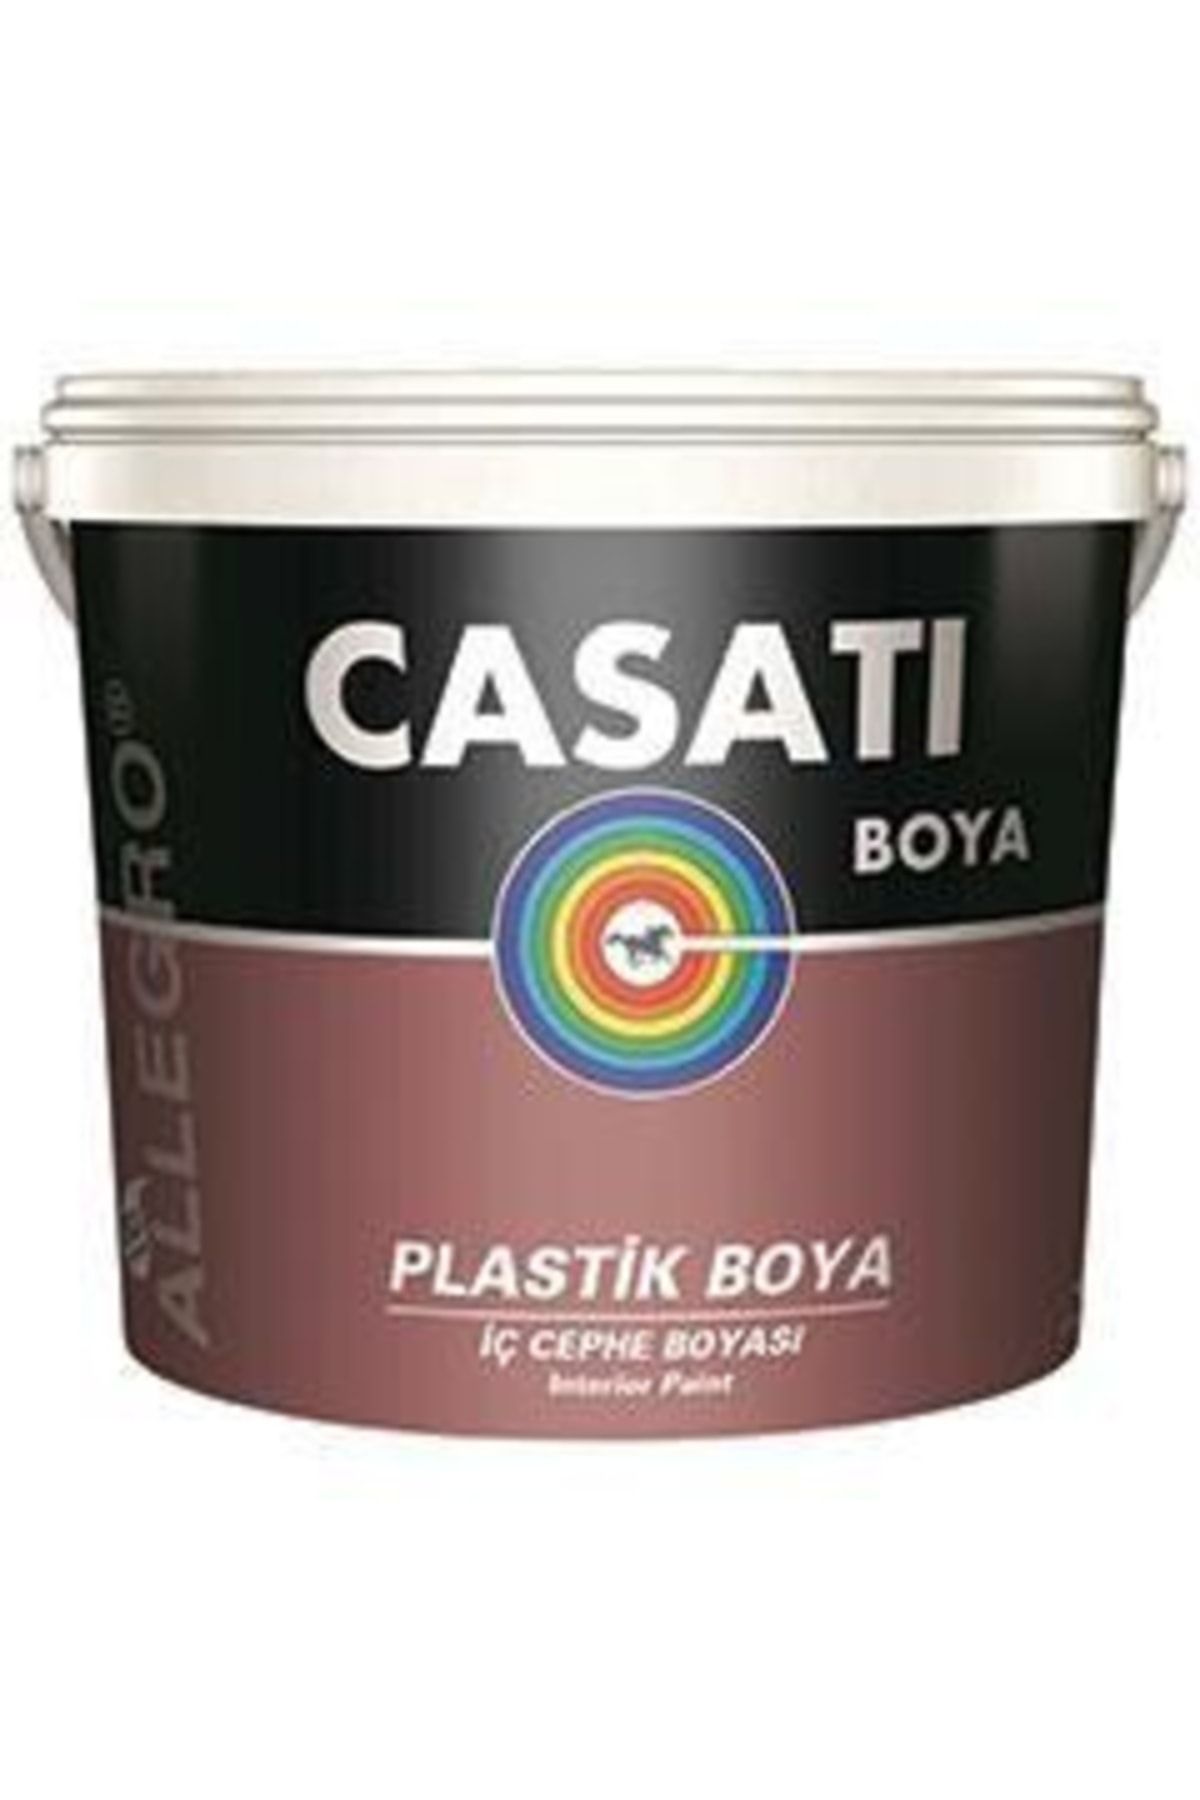 Casati Dyo Allegro Plastik Iç Cephe Boyası 10 Kg